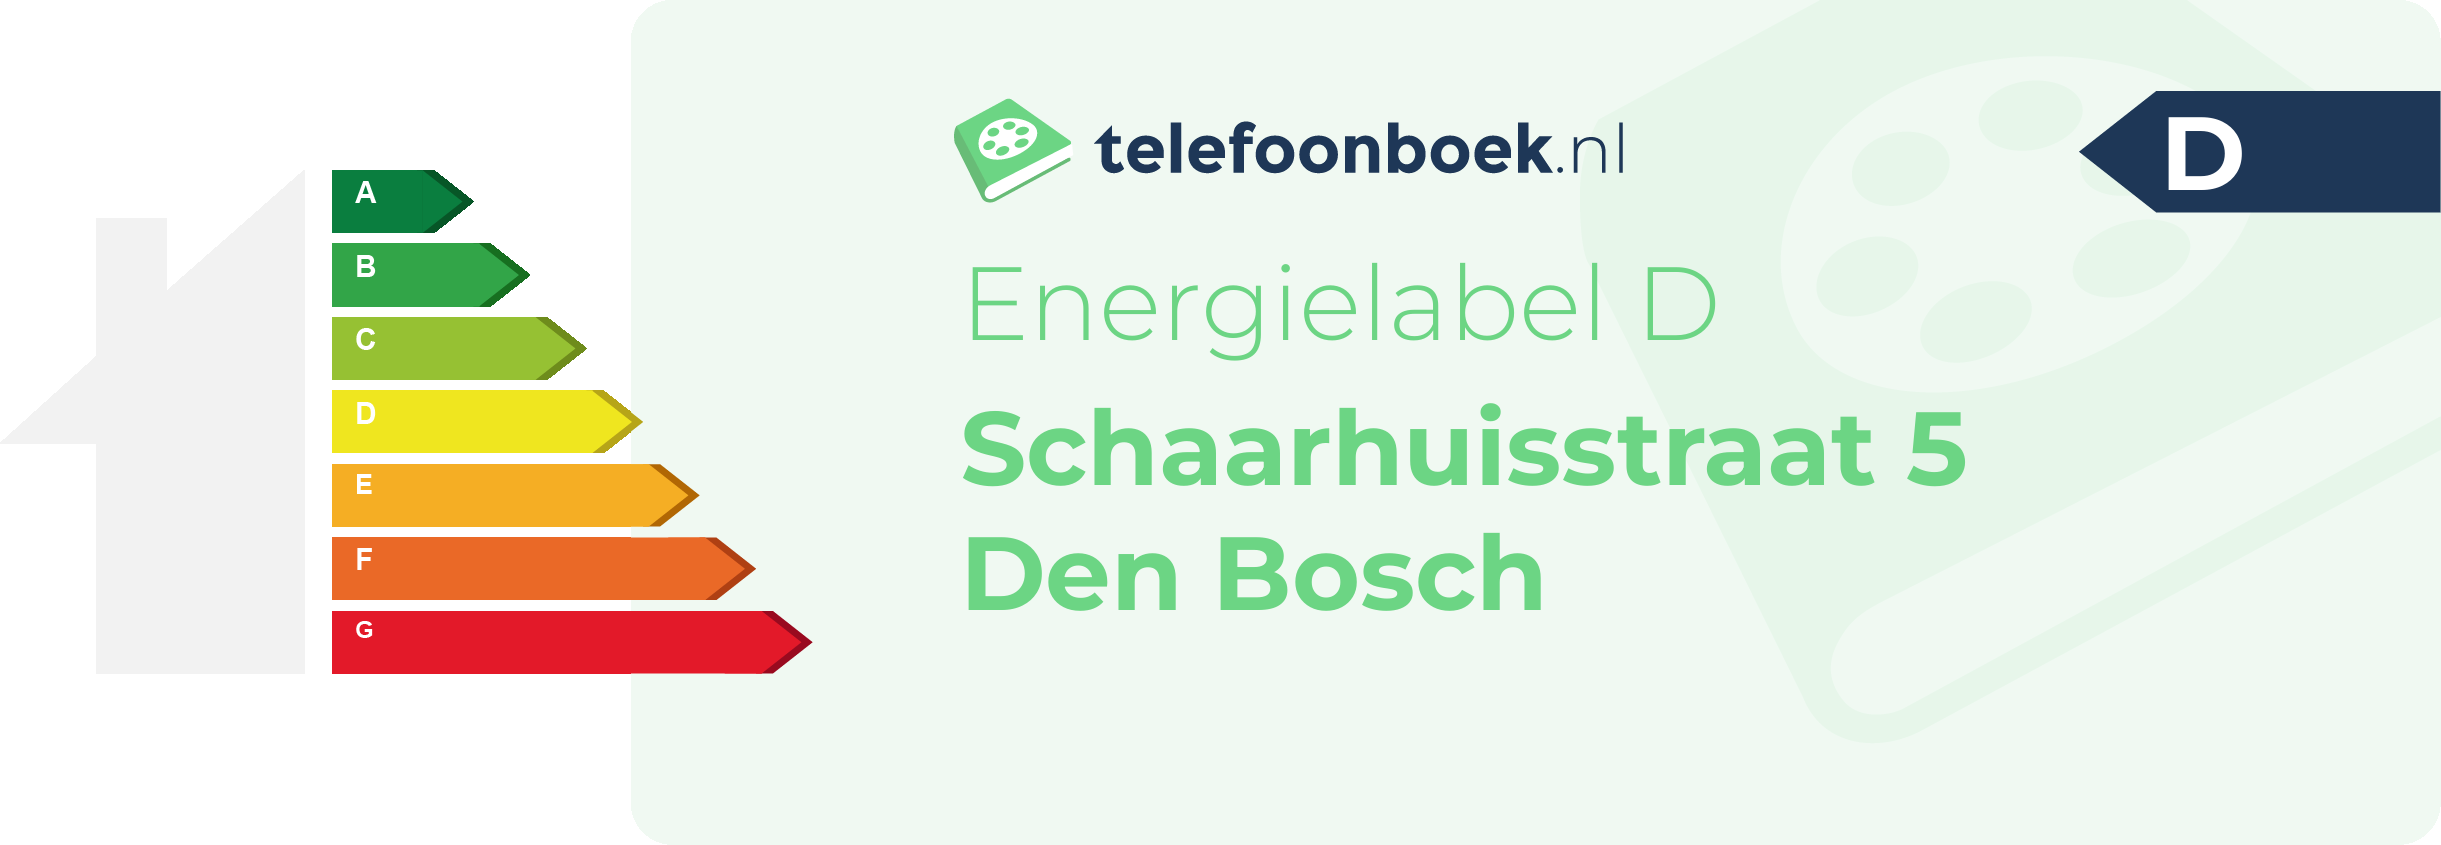 Energielabel Schaarhuisstraat 5 Den Bosch